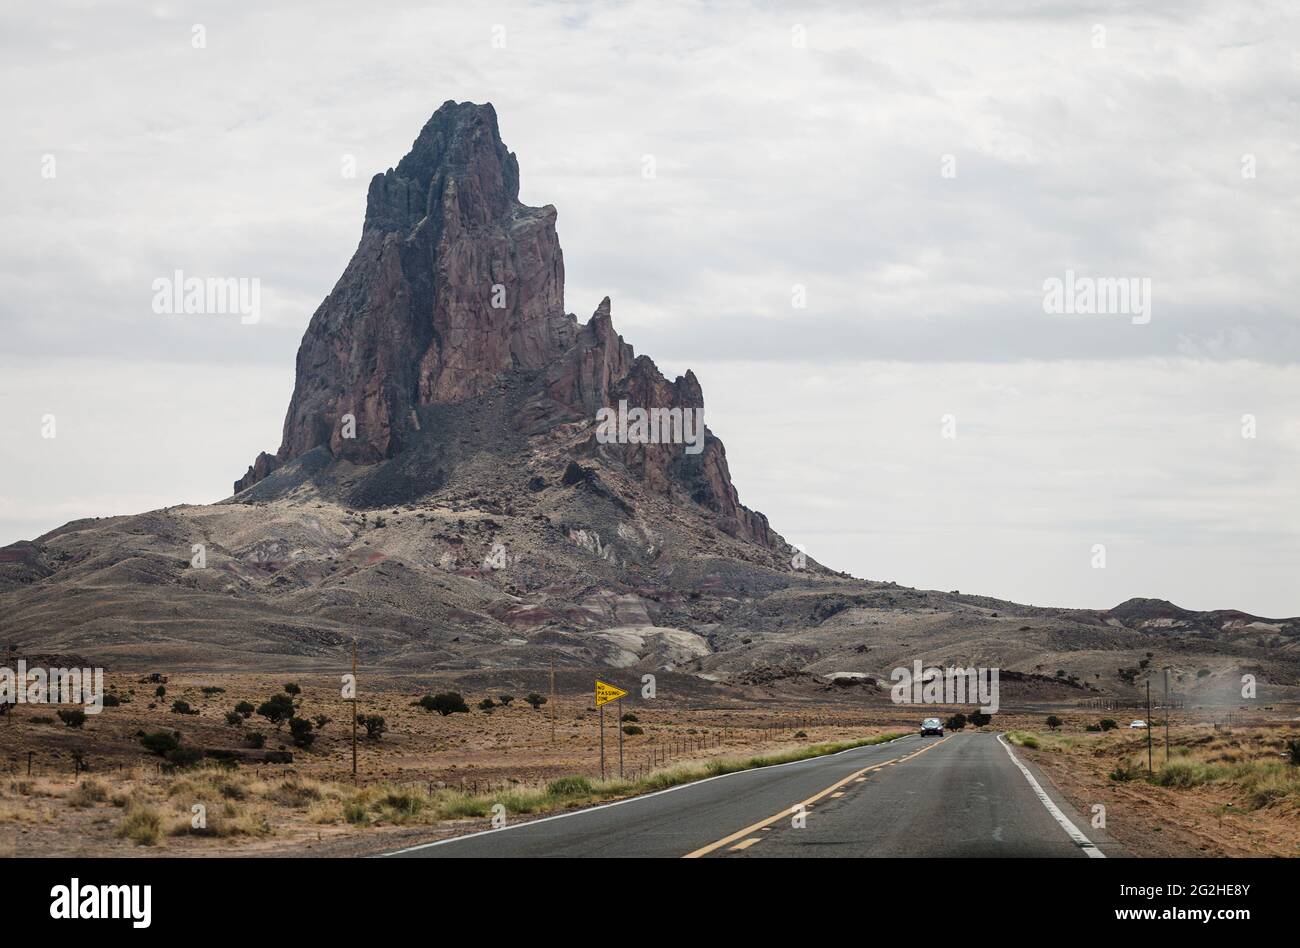 La cima di Agathla o El Capitan, a nord di Kayenta, sulla terra di Navajo, Arizona del nord, Stati Uniti. Una spina vulcanica erosa a sud della Monument Valley, è considerata sacra dal Navajo. Foto Stock